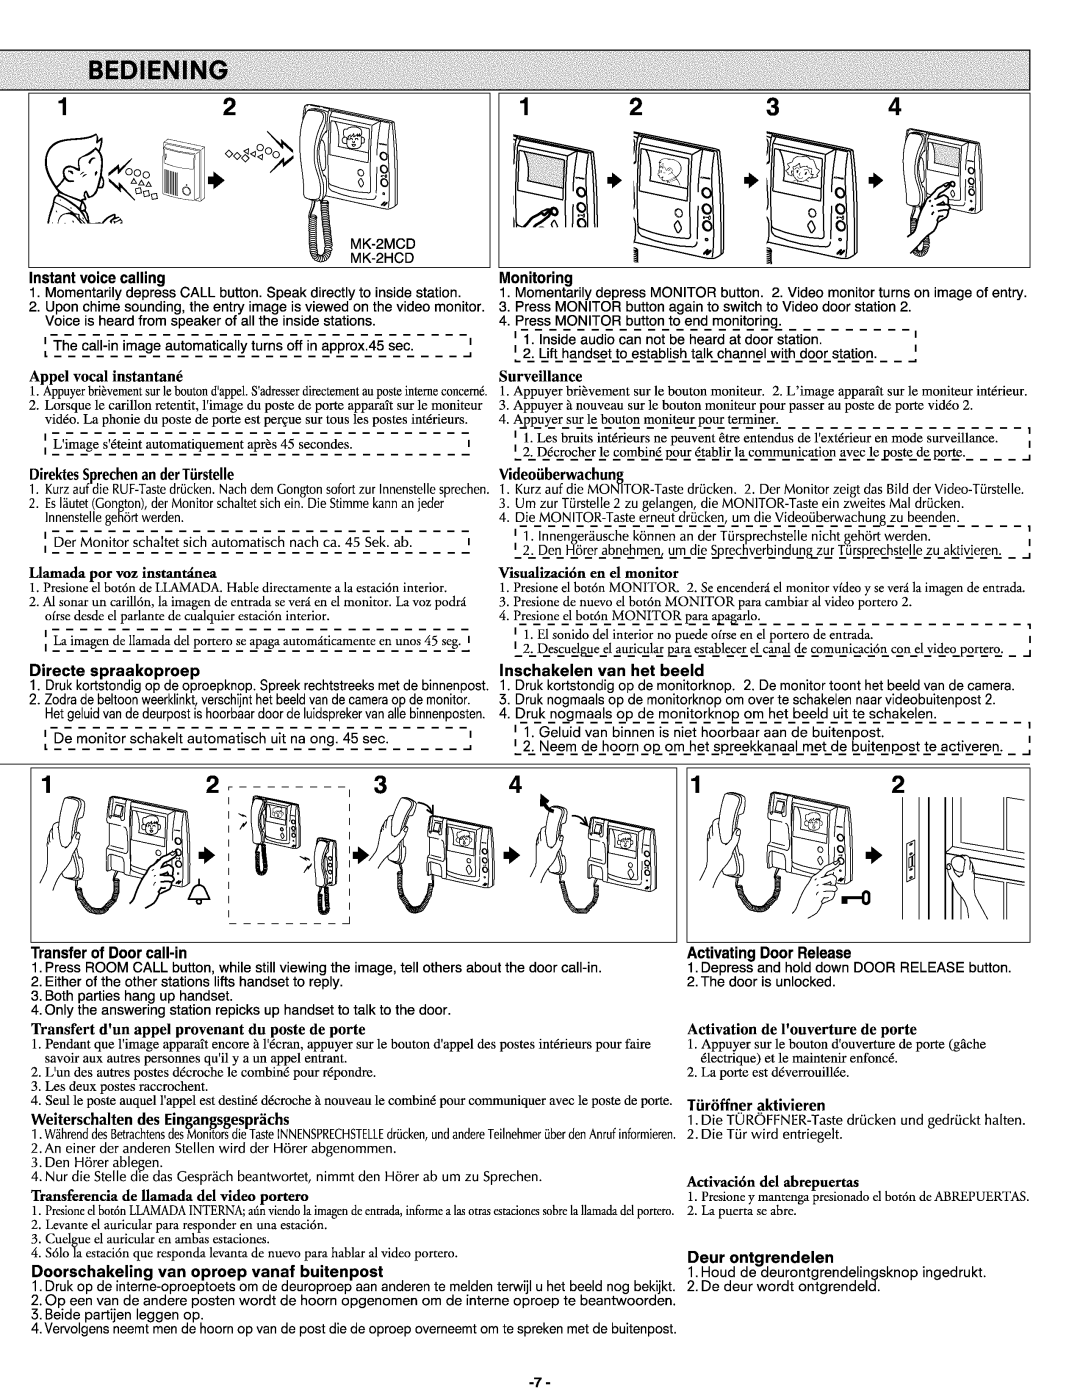 Aiphone MK-2HCD, Mk-2mcd manual 